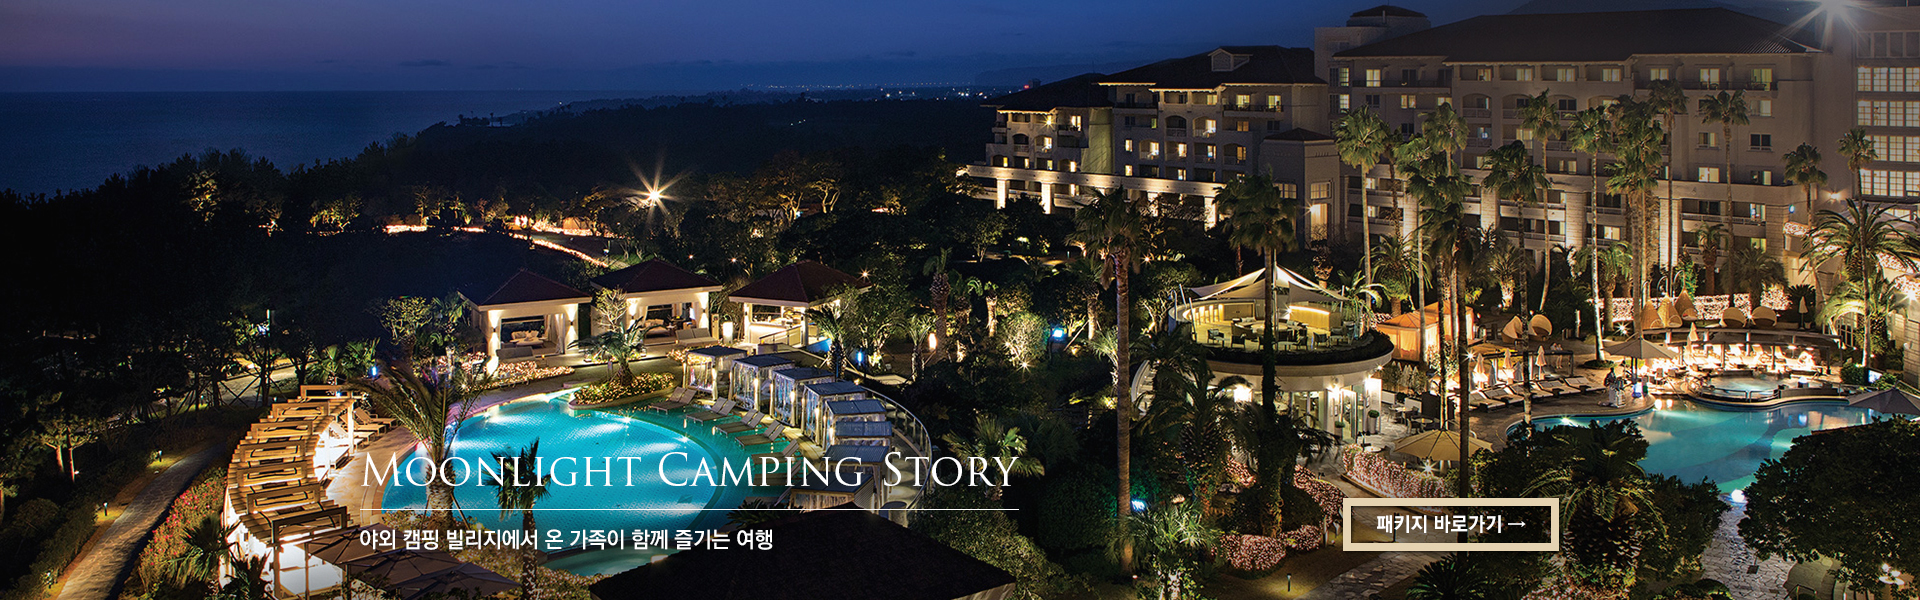 Moonlight Camping Story 야외 캠핑 빌리지에서 온 가족이 함께 즐기는 여행